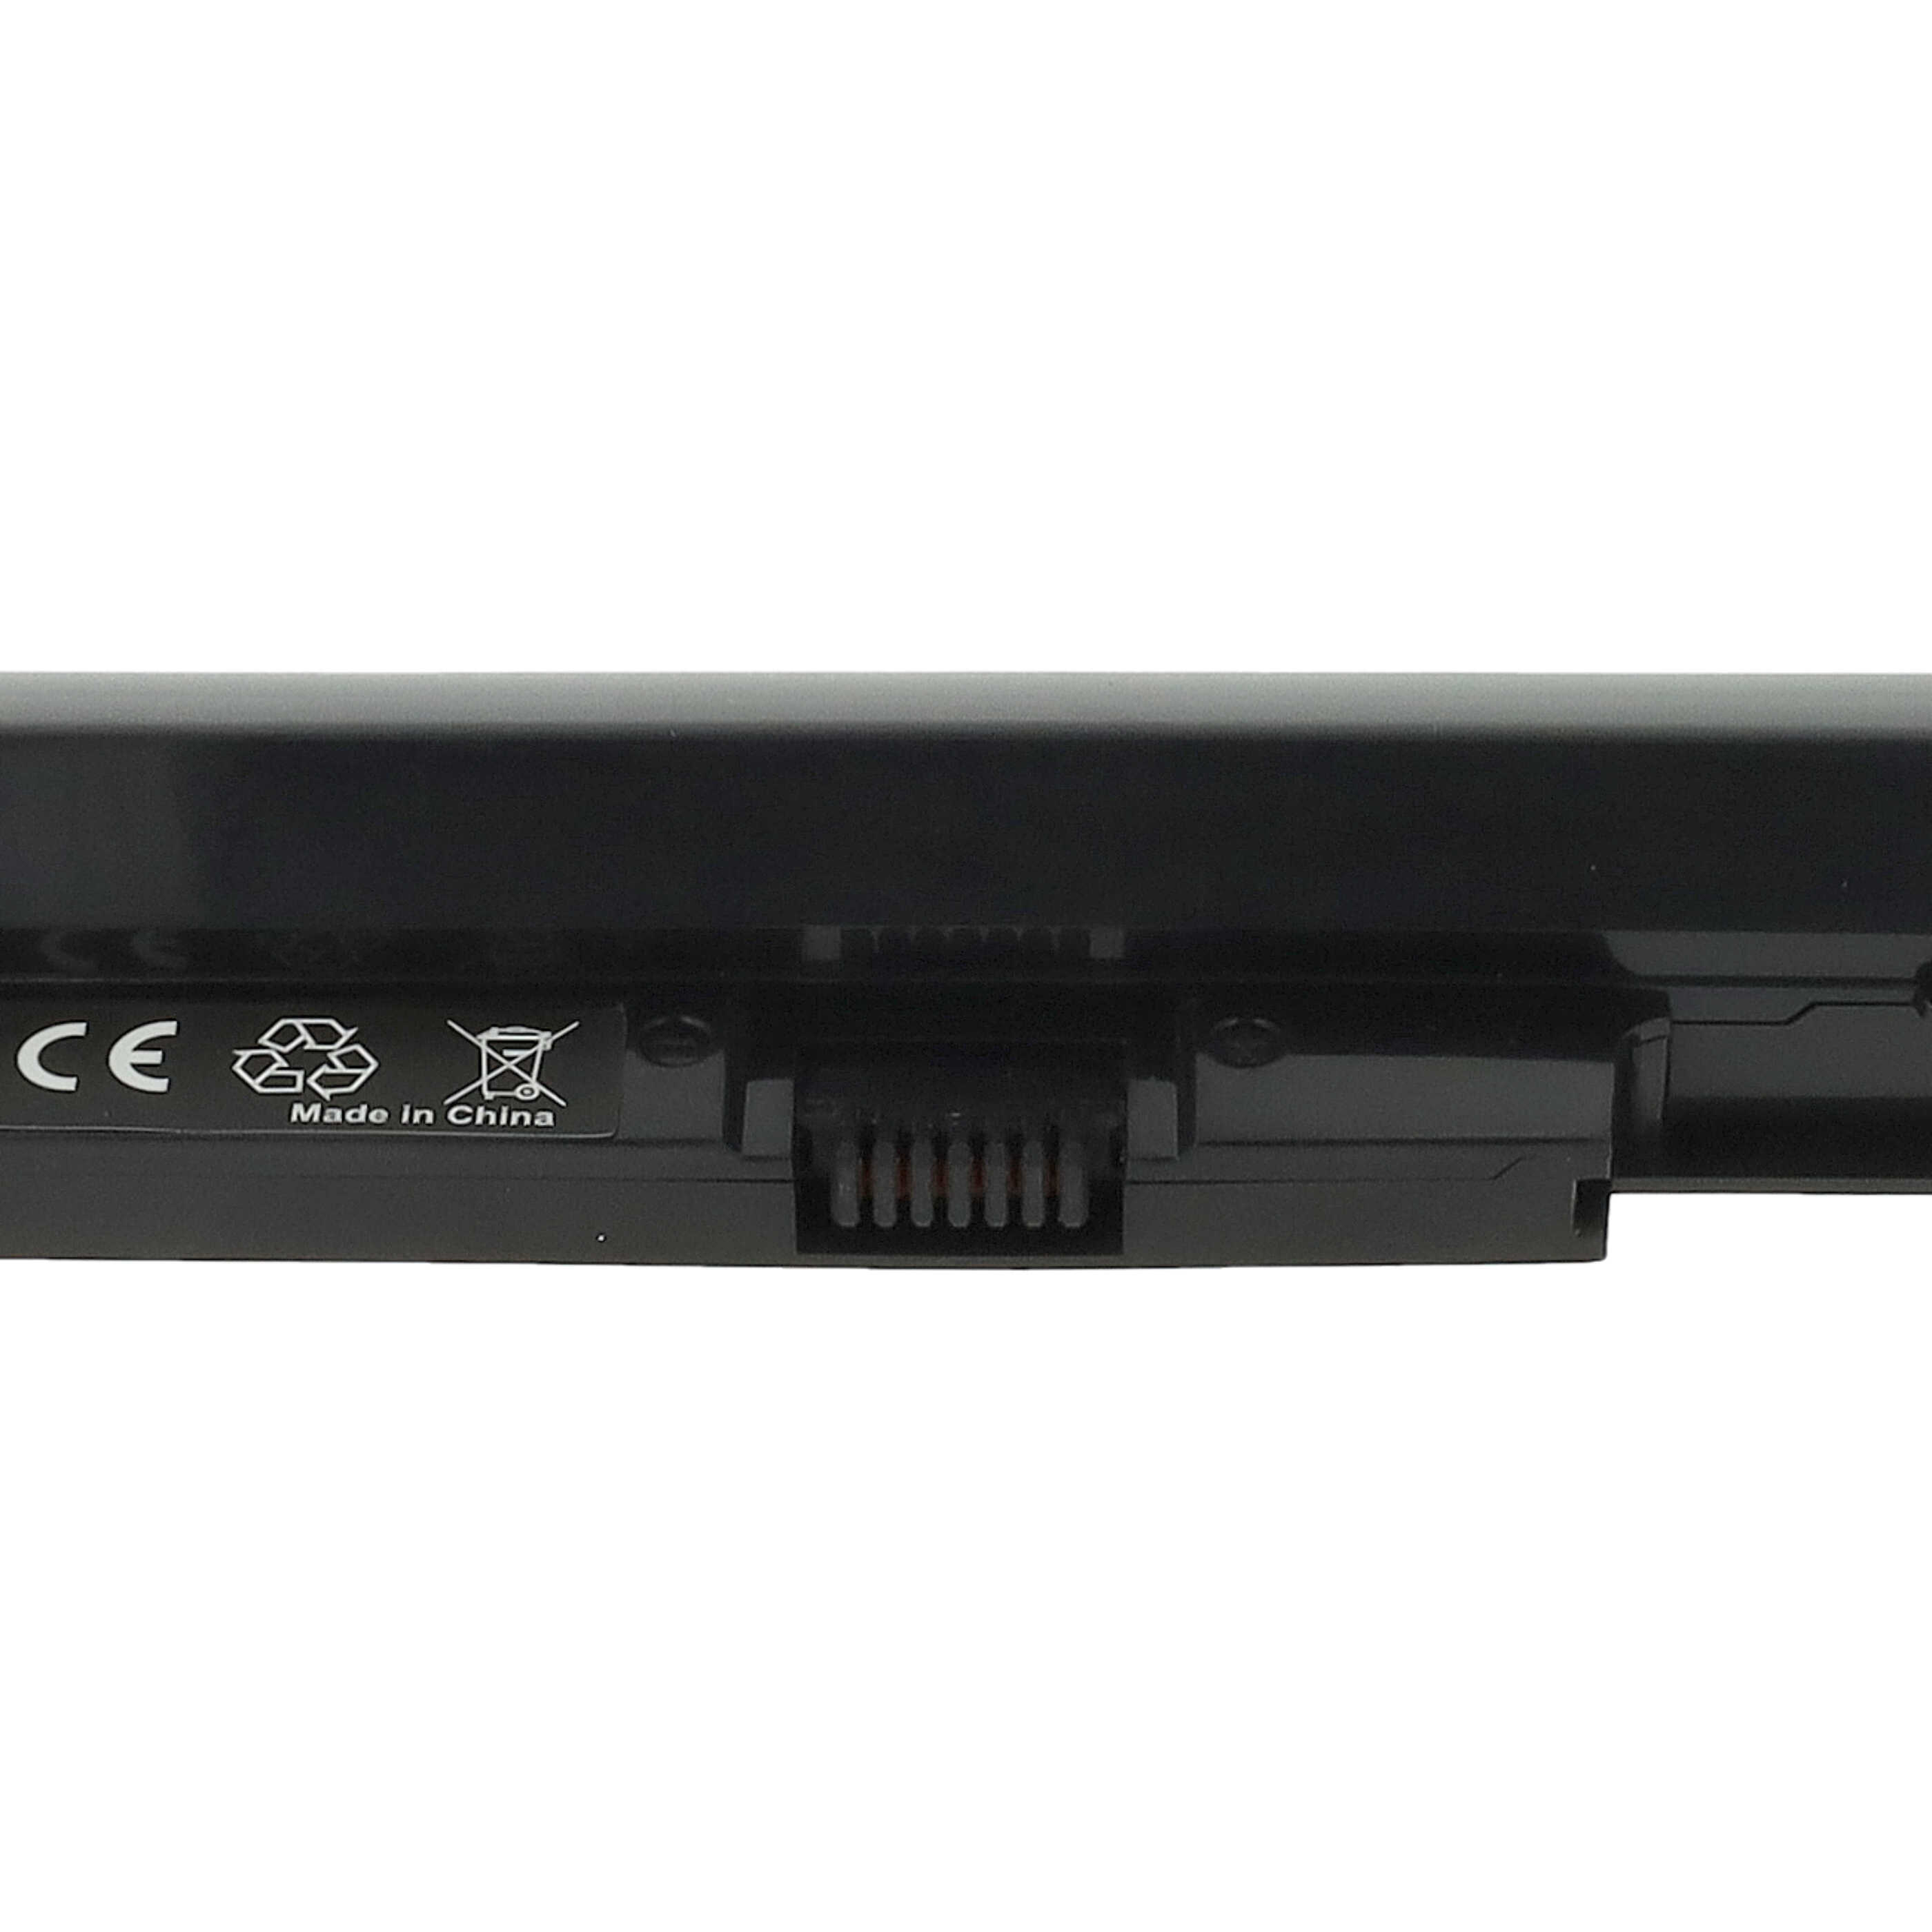 Akumulator do laptopa zamiennik HP H6L28AA, 768549-001, HSTNN-IB4L, 707618-121 - 2600 mAh 14,8 V Li-Ion, szary